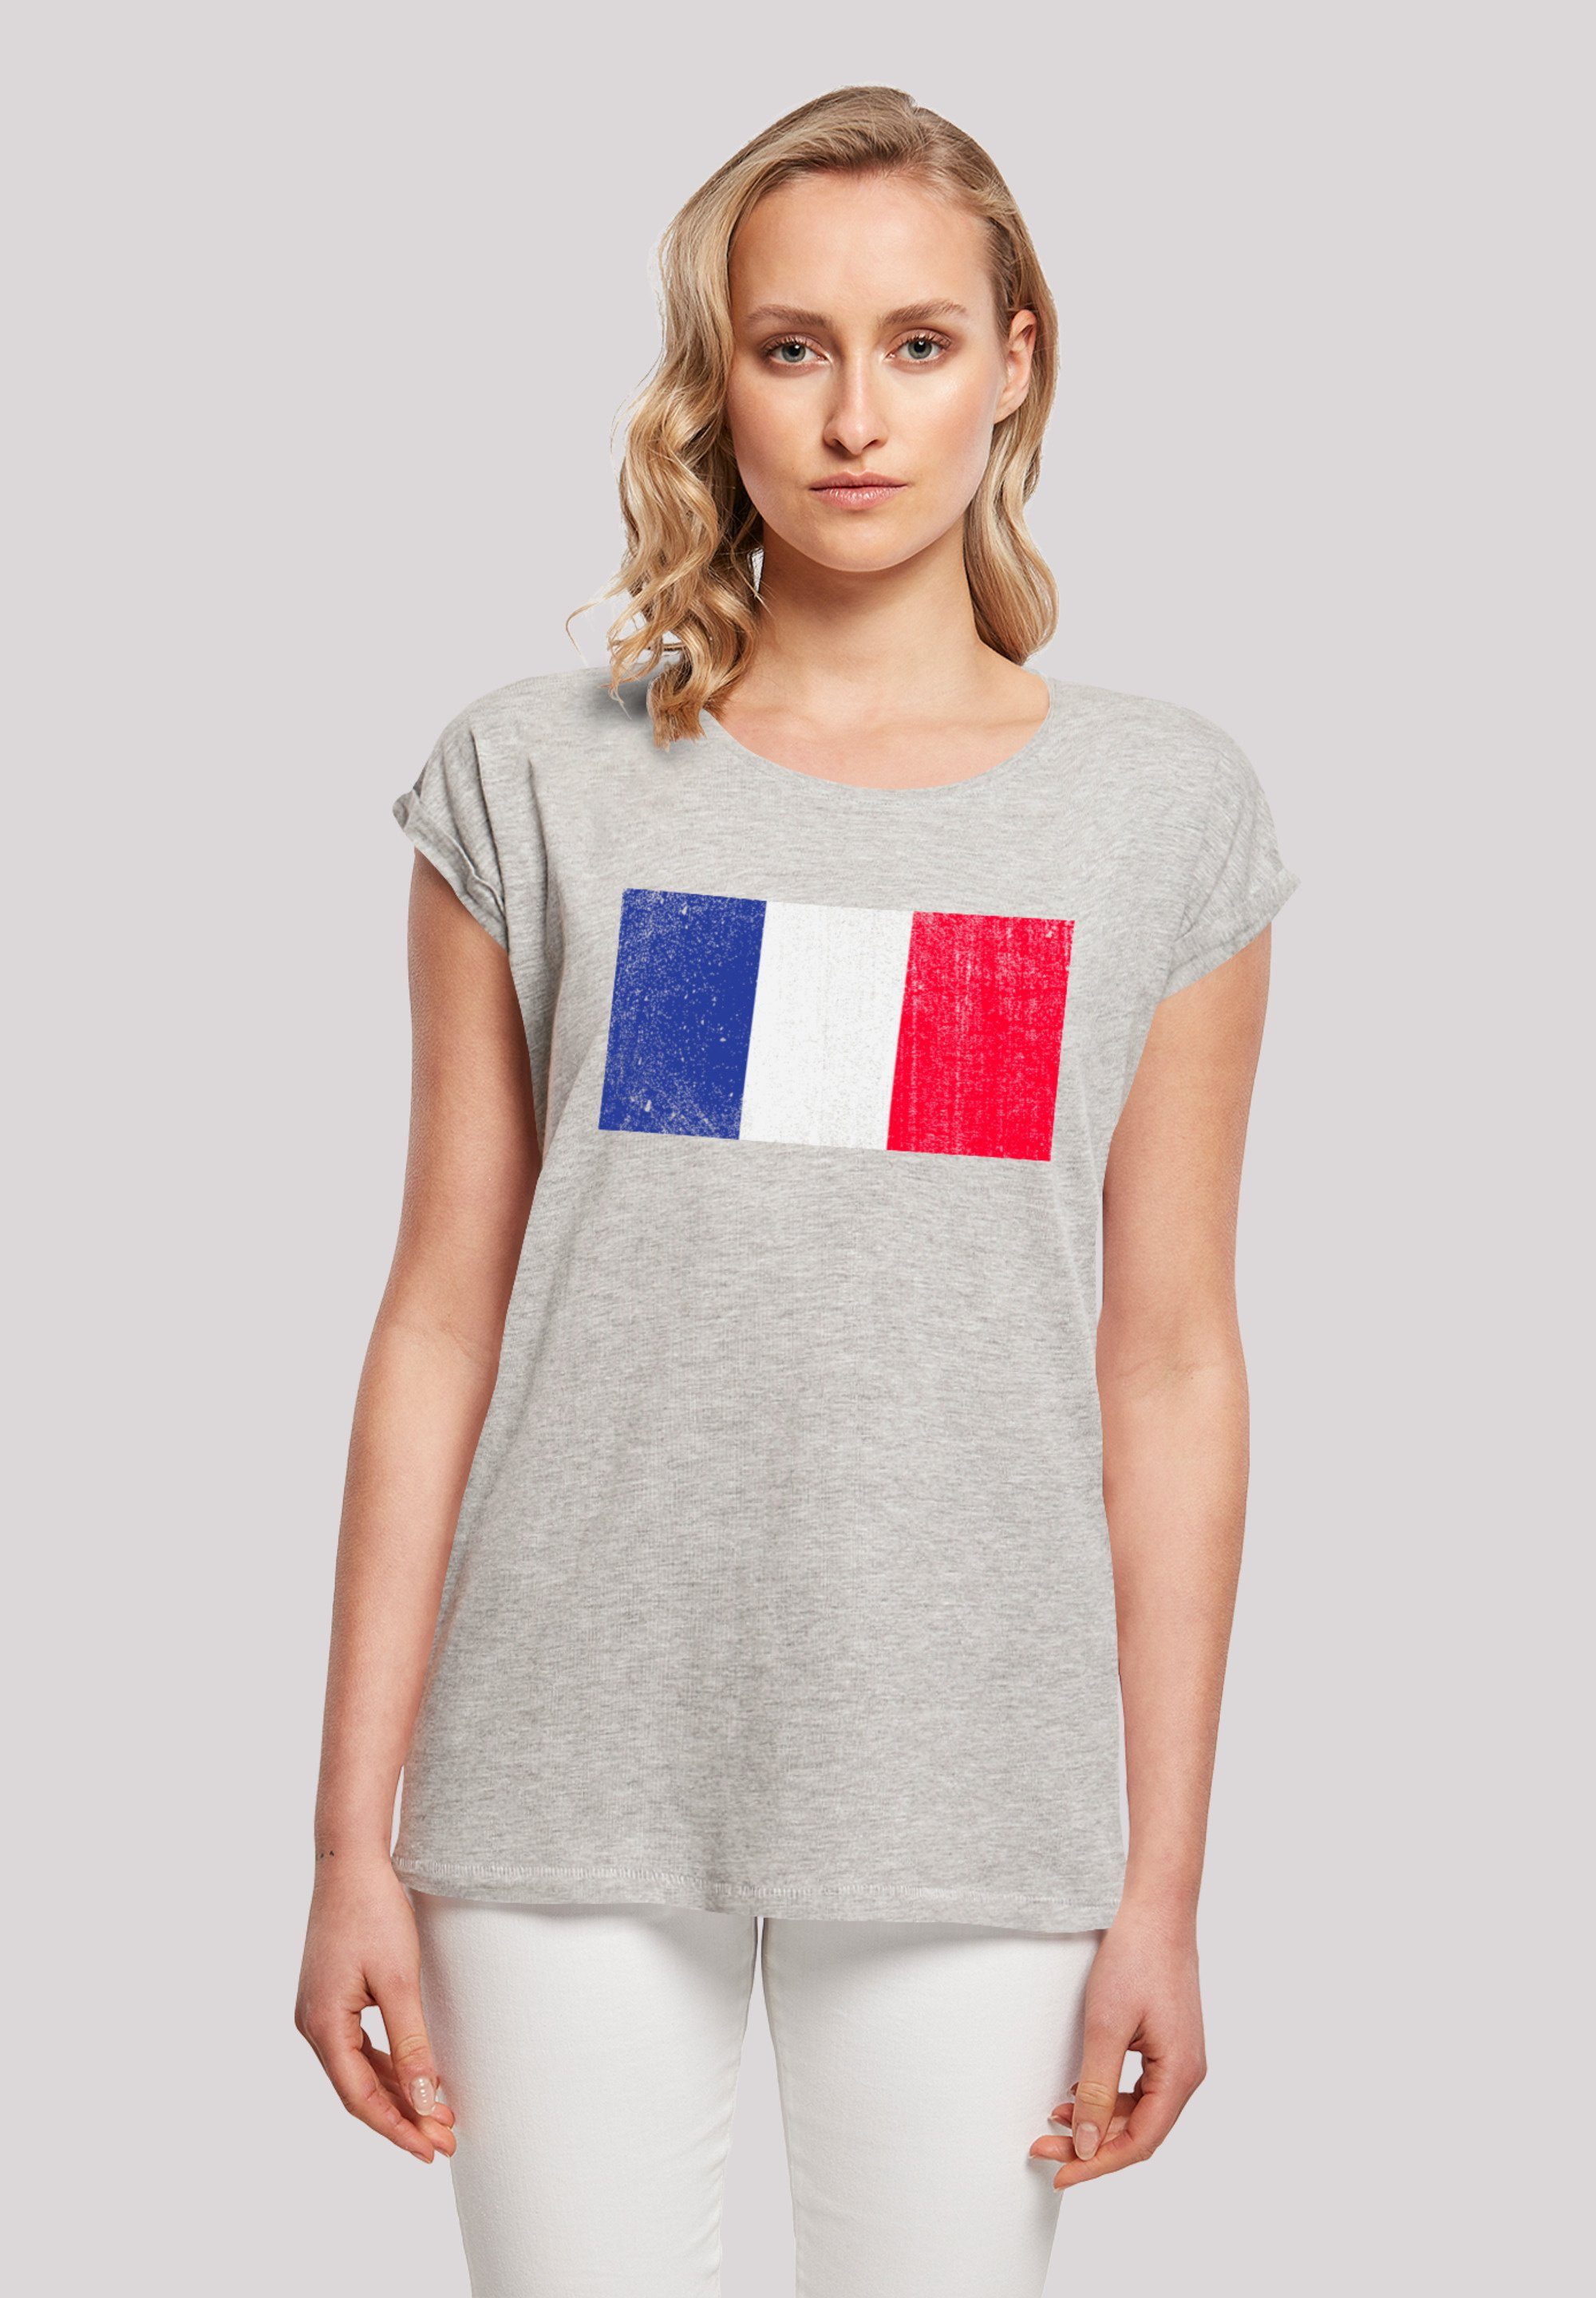 distressed T-Shirt Tragekomfort Print, France weicher mit Baumwollstoff Flagge hohem Sehr Frankreich F4NT4STIC